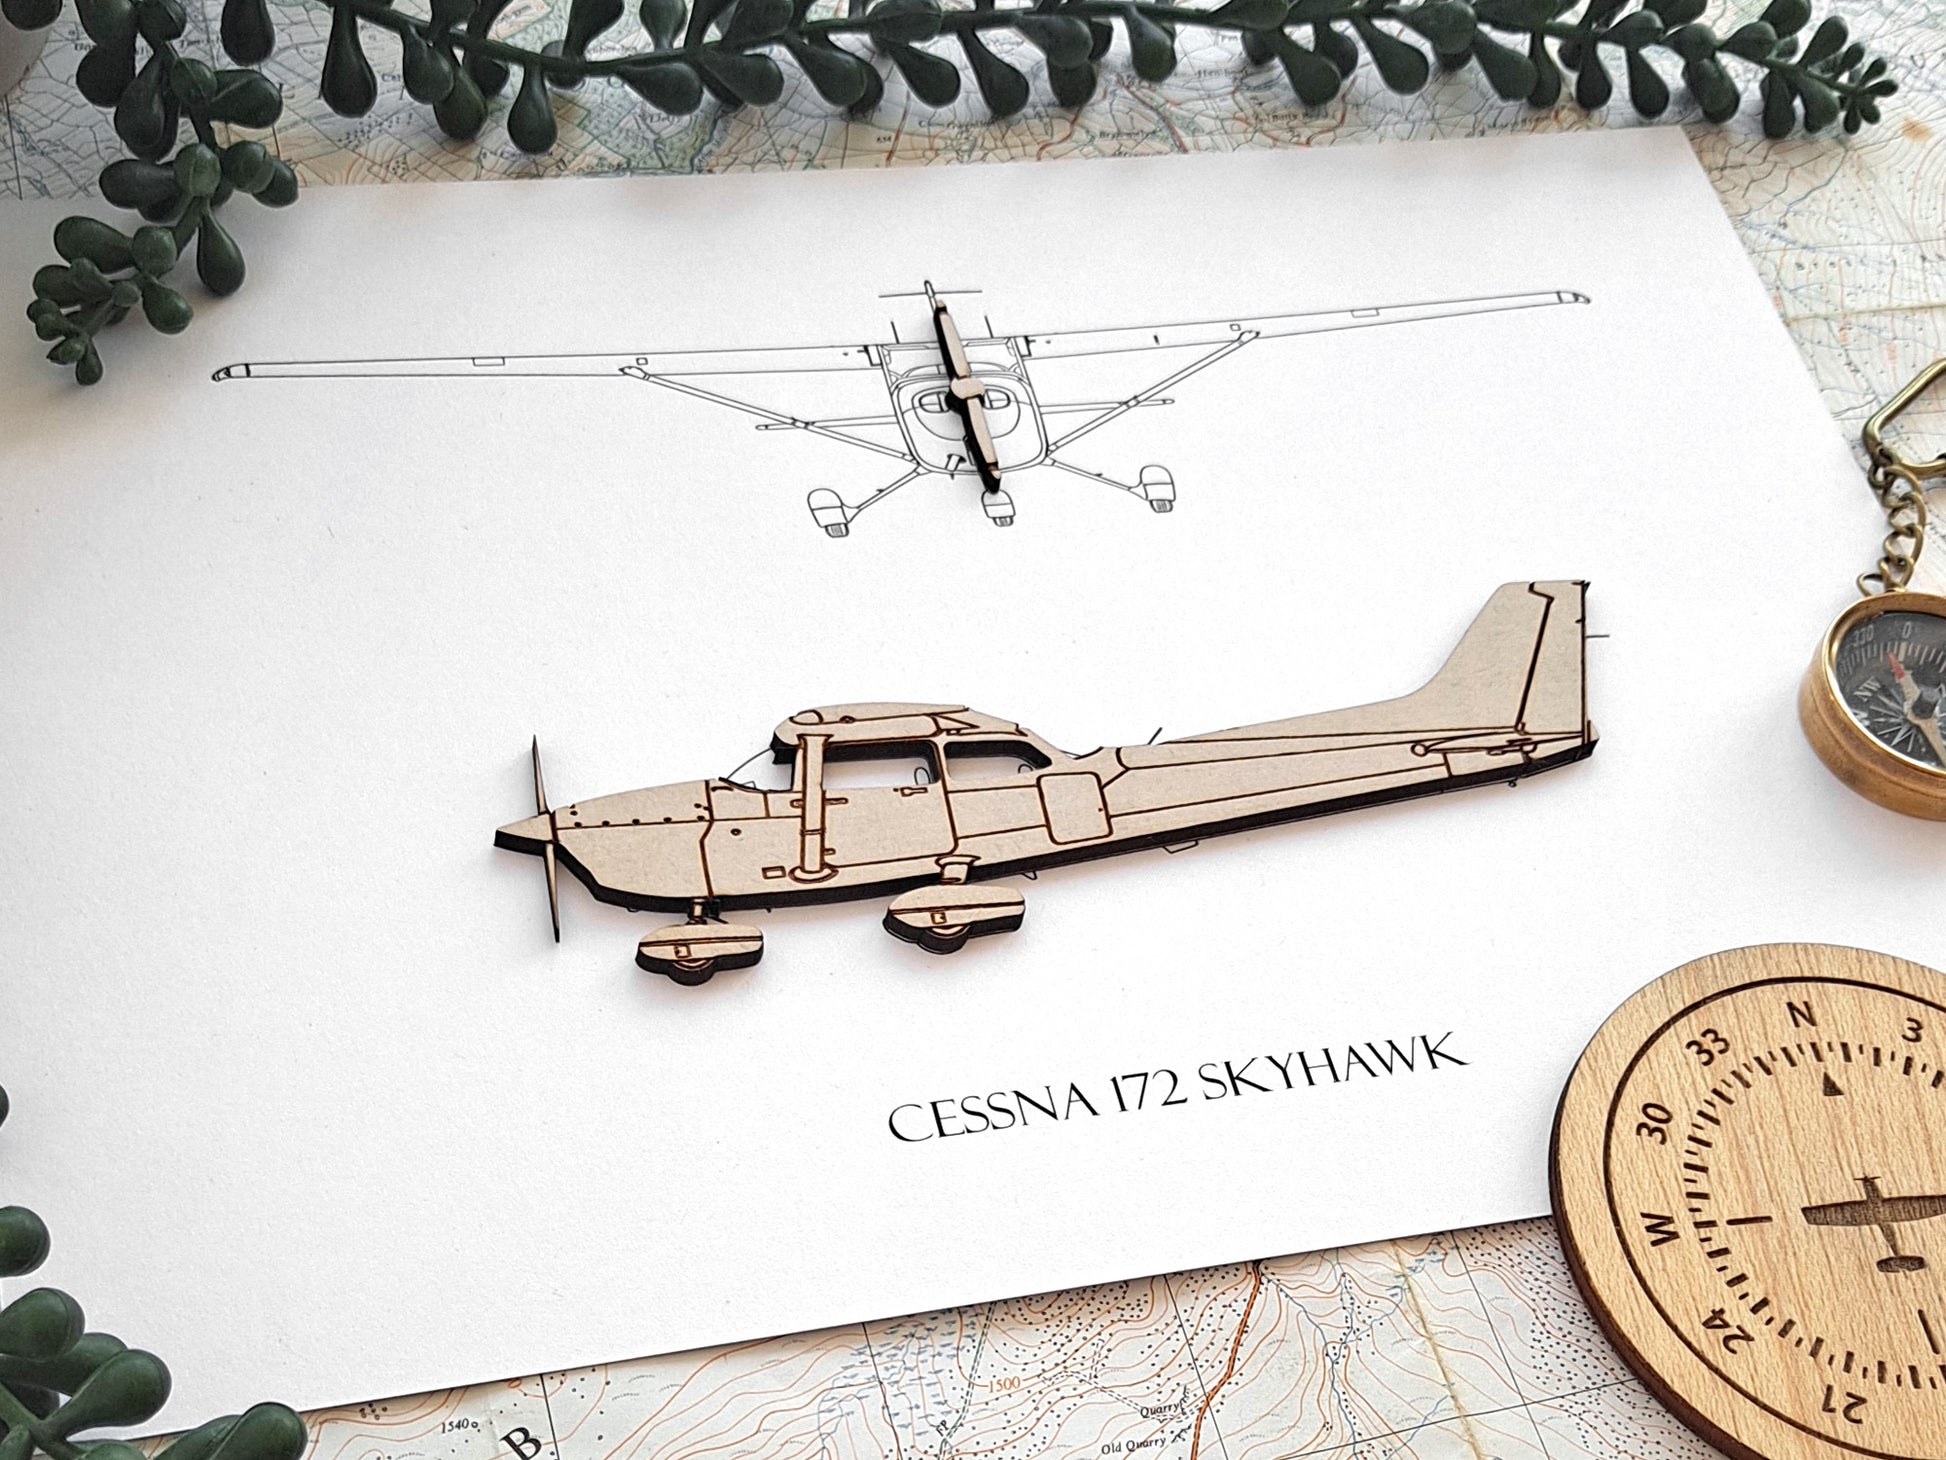 Cessna 172 Skyhawk aviation art gift